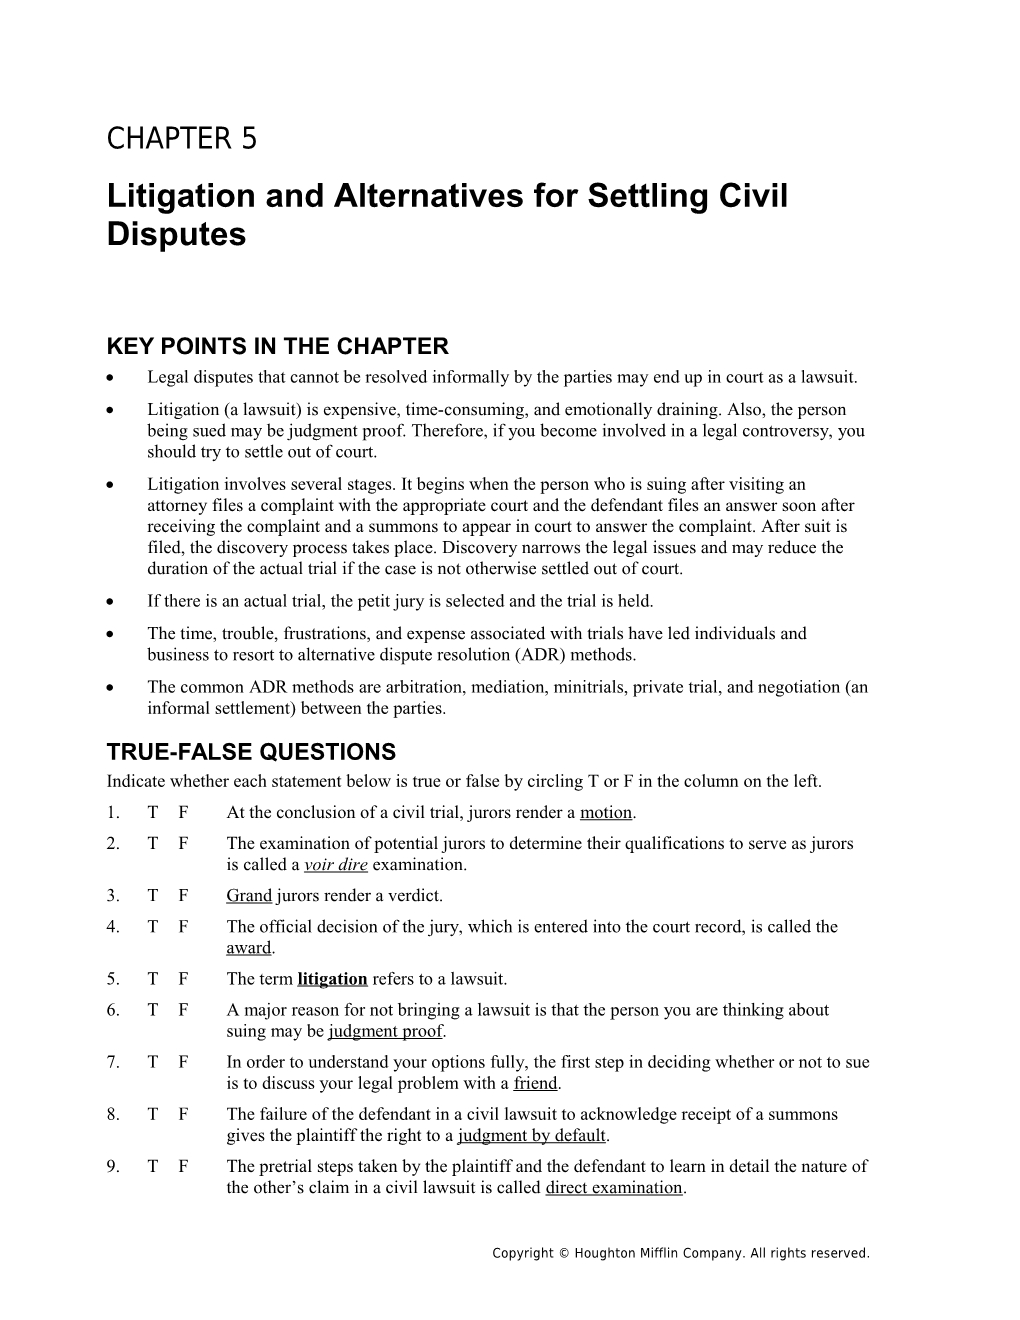 Litigation and Alternatives for Settling Civil Disputes